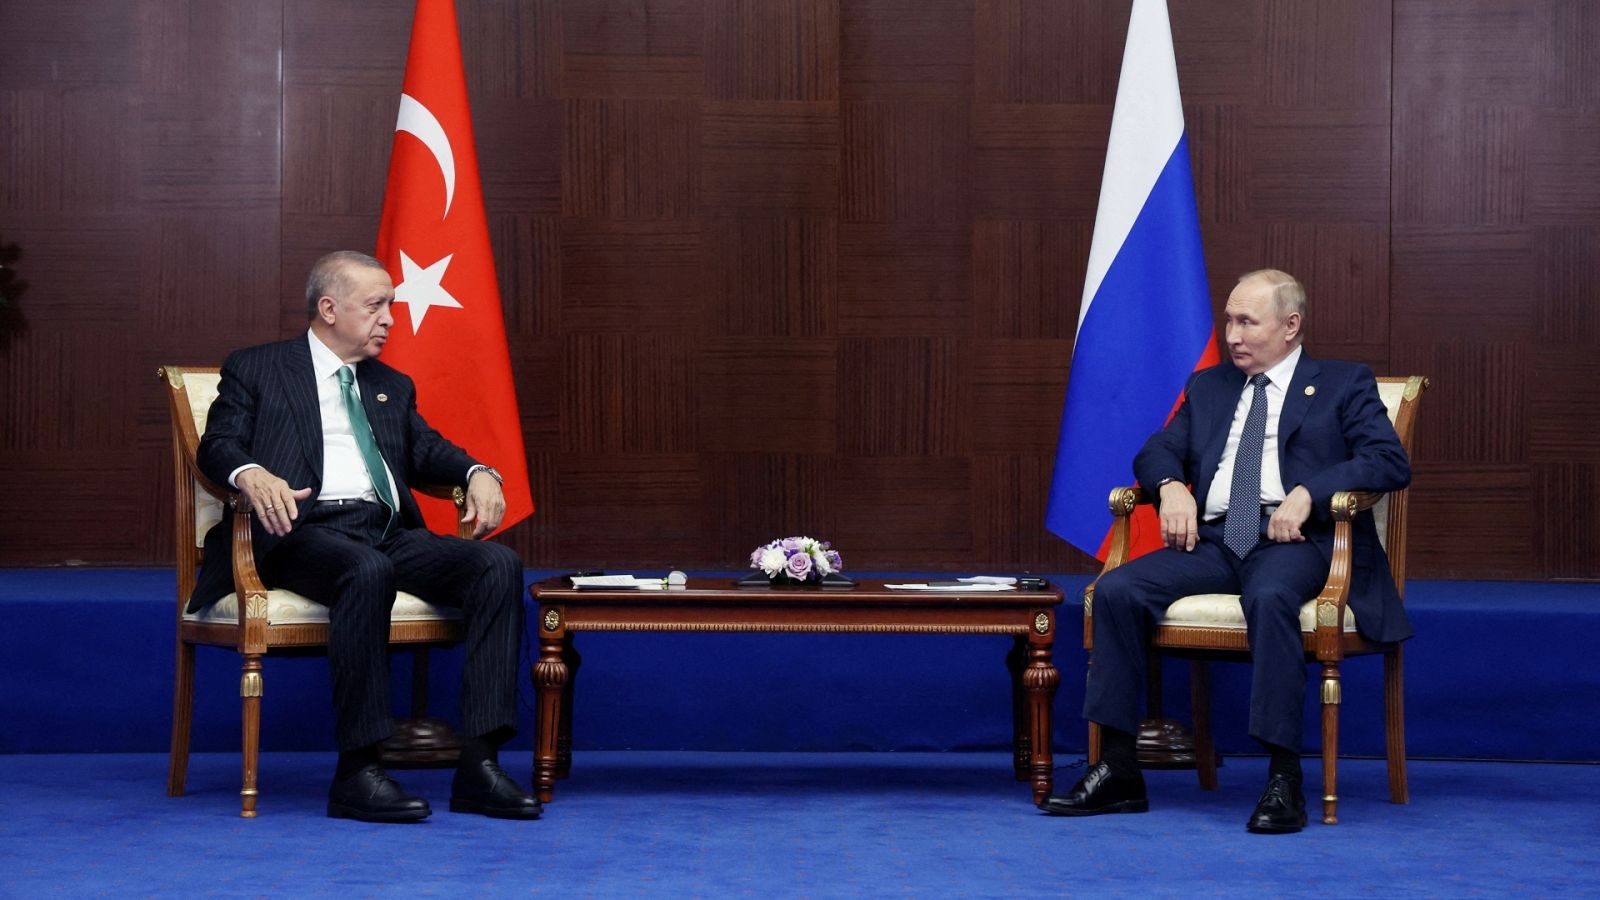 El presidente turco Tayyip Erdogan y el mandatario ruso Vladimir Putin en una imagen de archivo